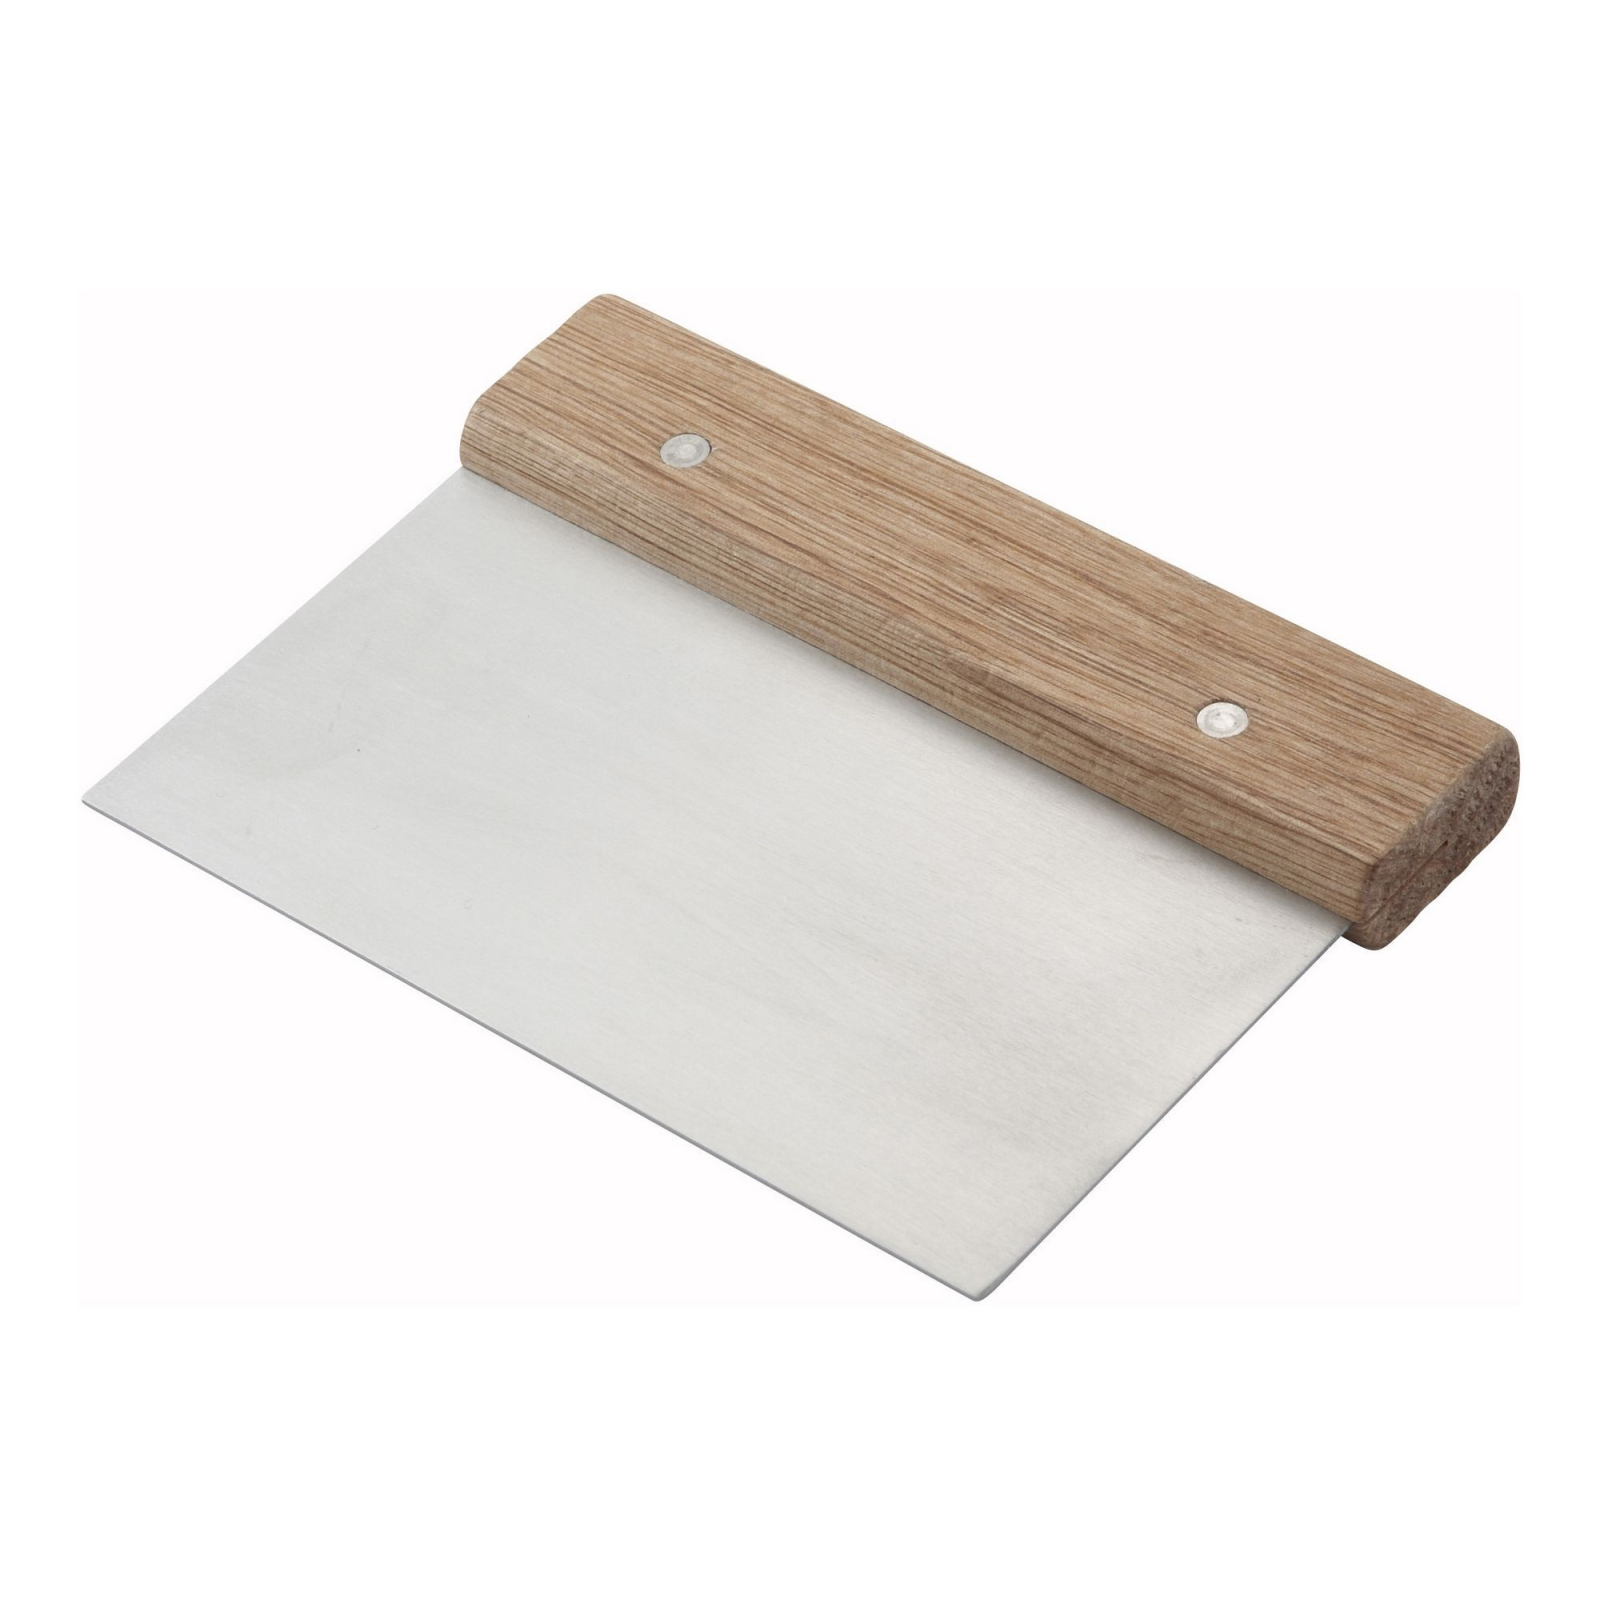 Кухонный нож Winco скребок для тіста 15 х 7,5 см DSC-3 (10225)